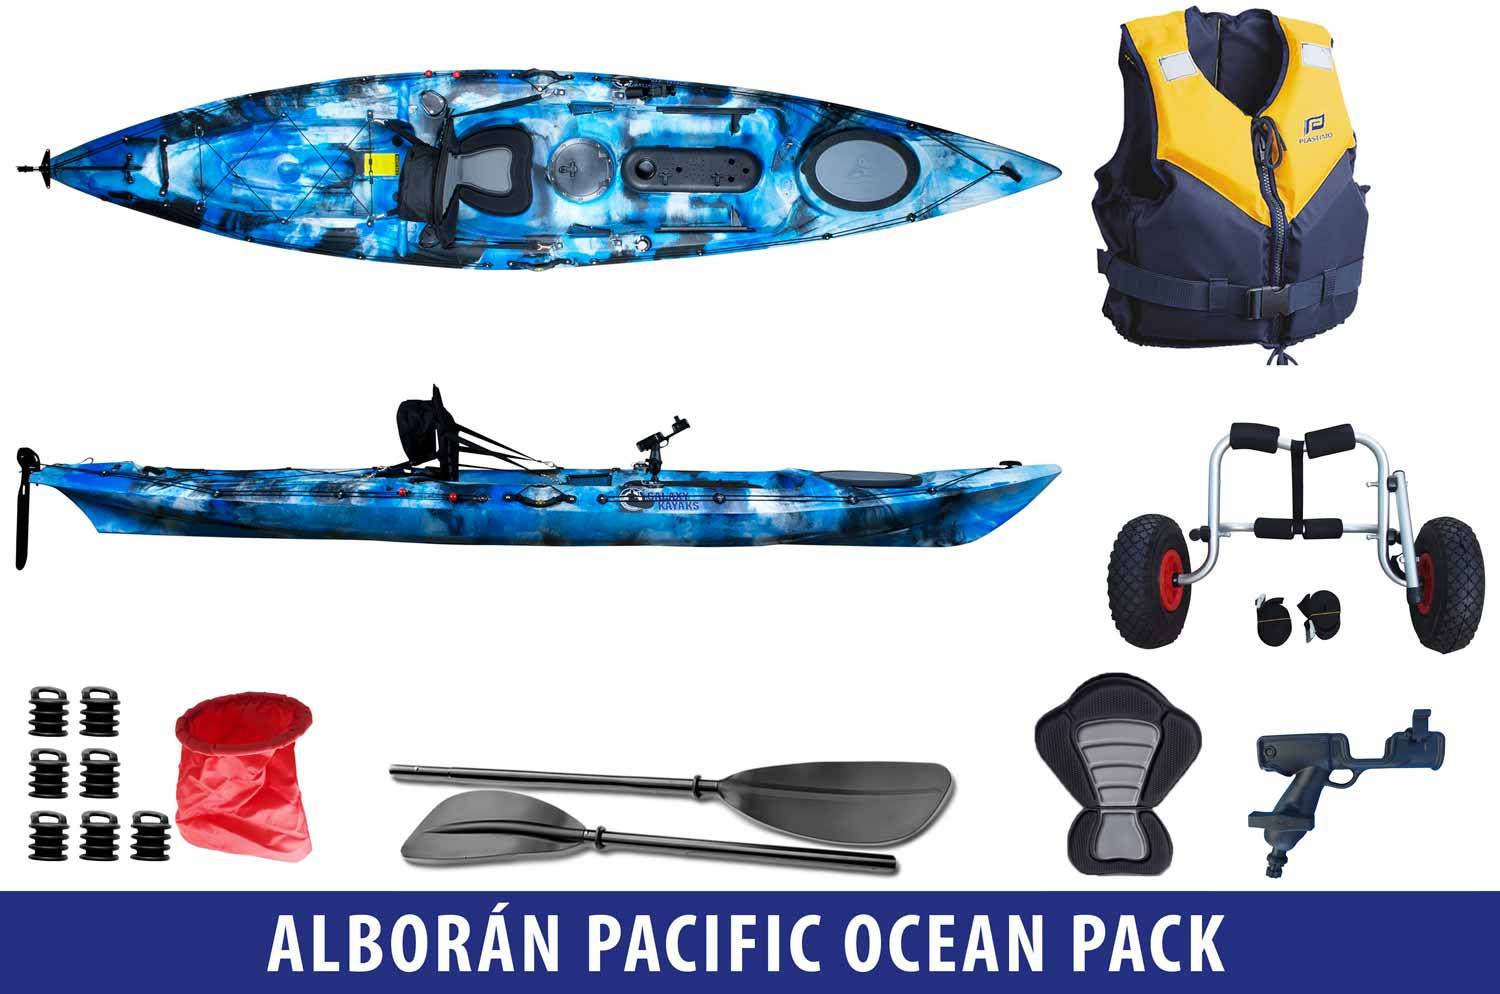 Alborán Pacific Ocean Pack